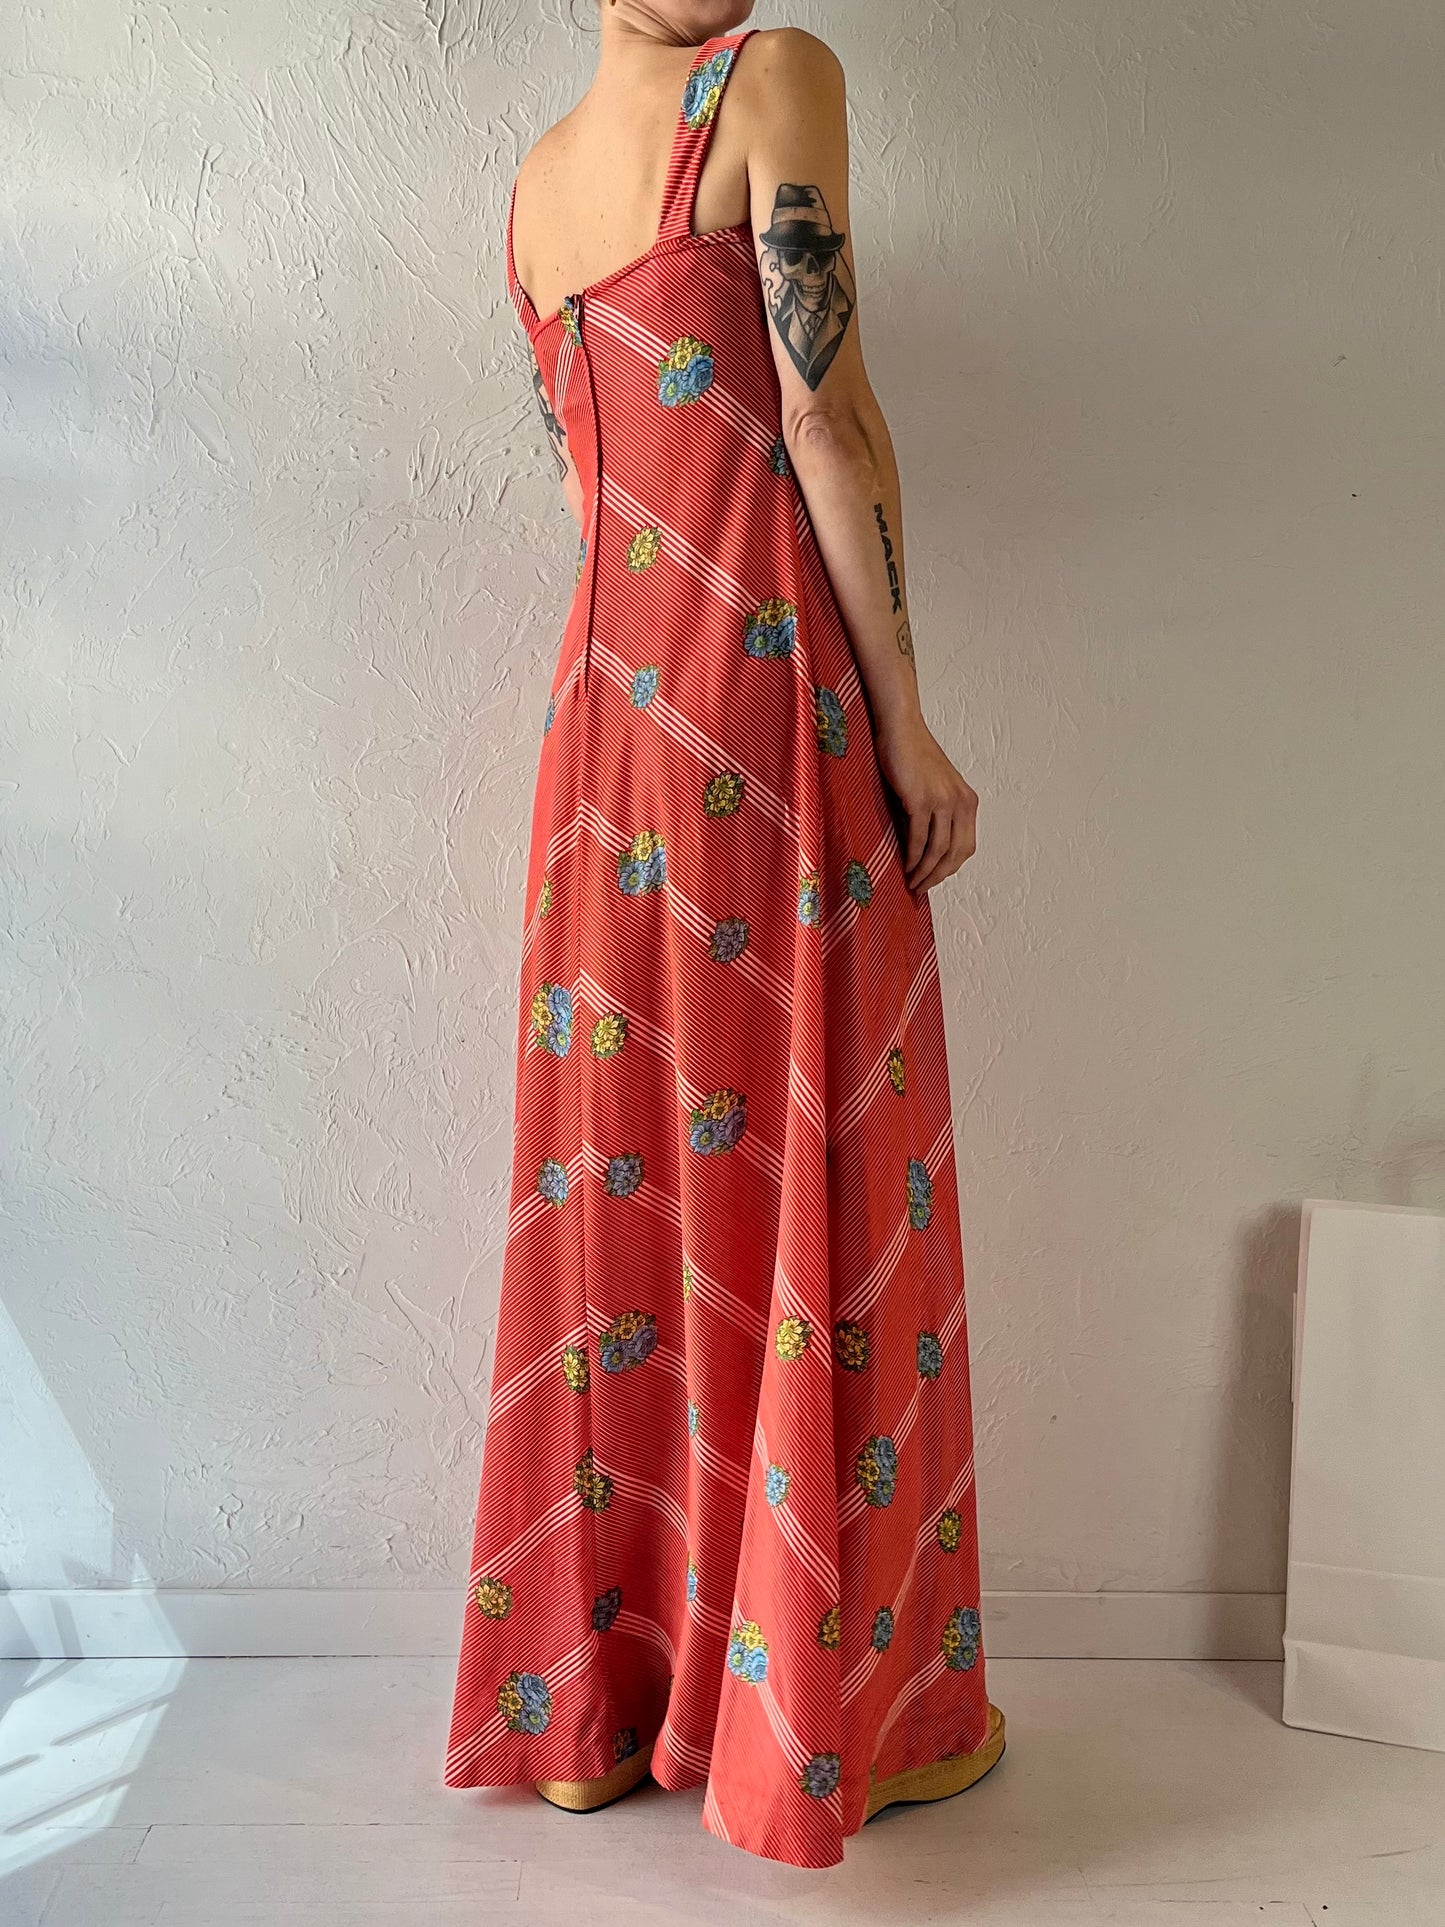 70s Handmade Maxi Dress / Small